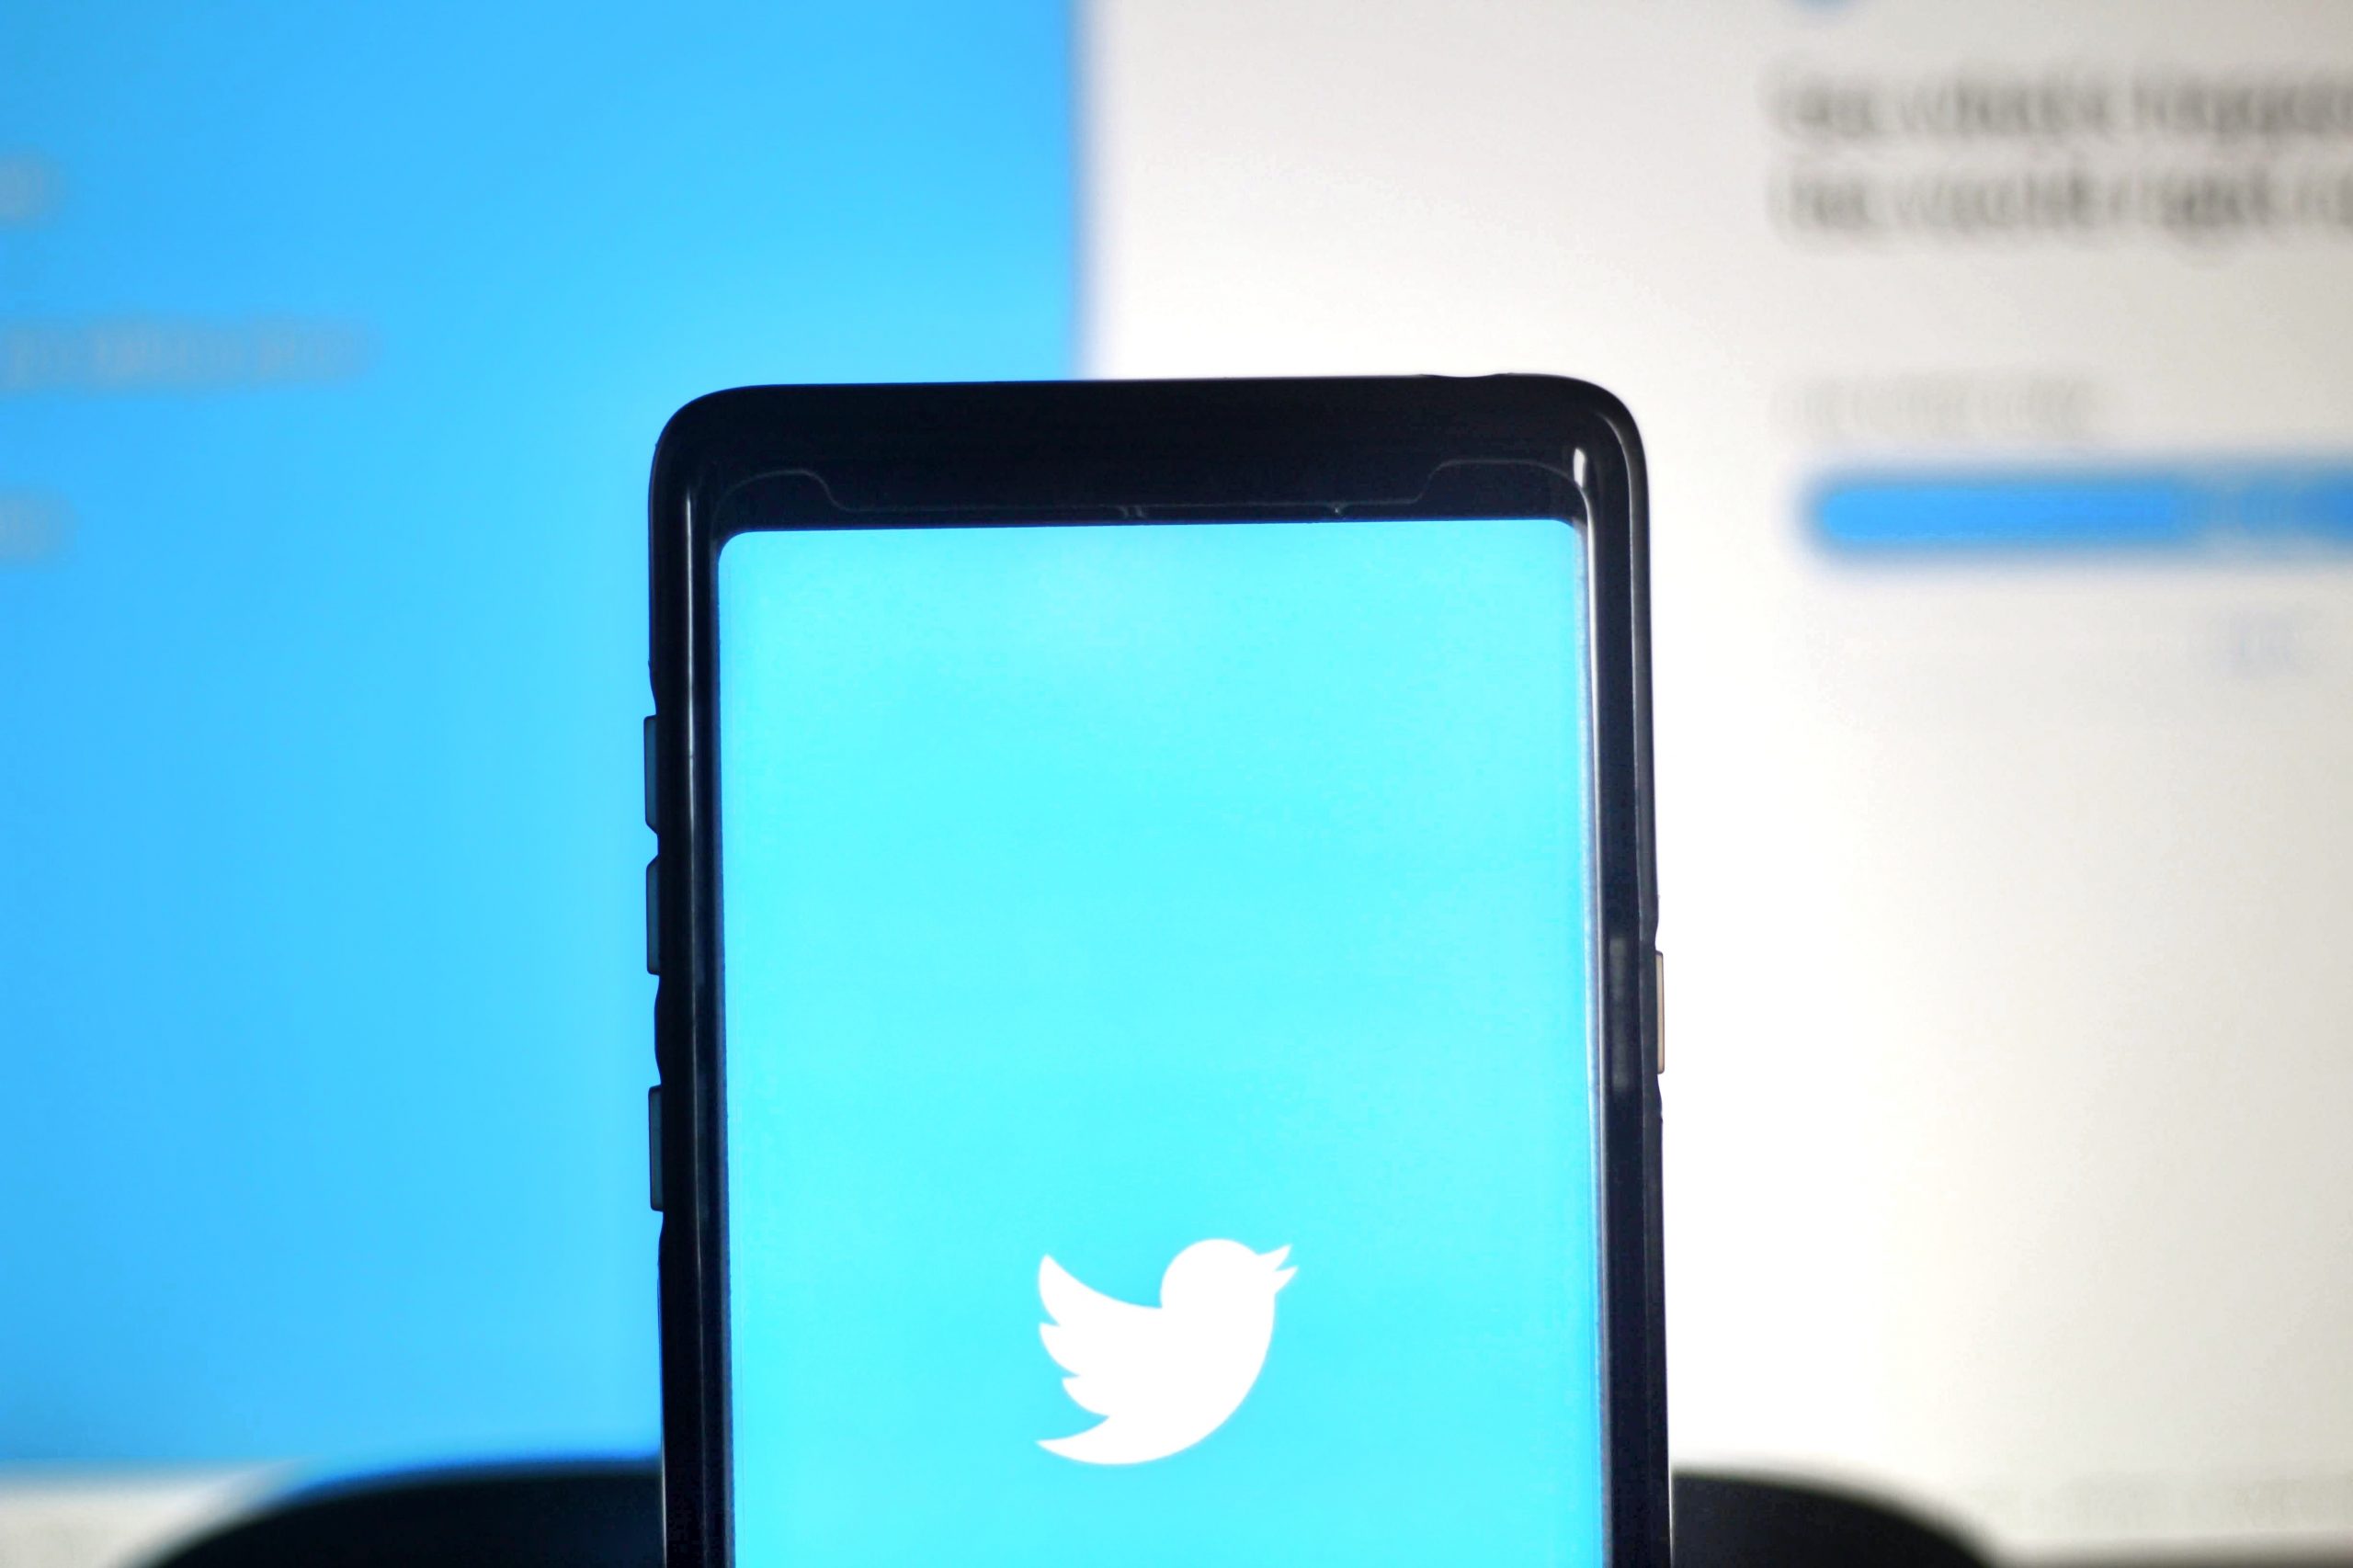 Twitter Menguji Ciri Rakaman “Spaces” Pada iOS